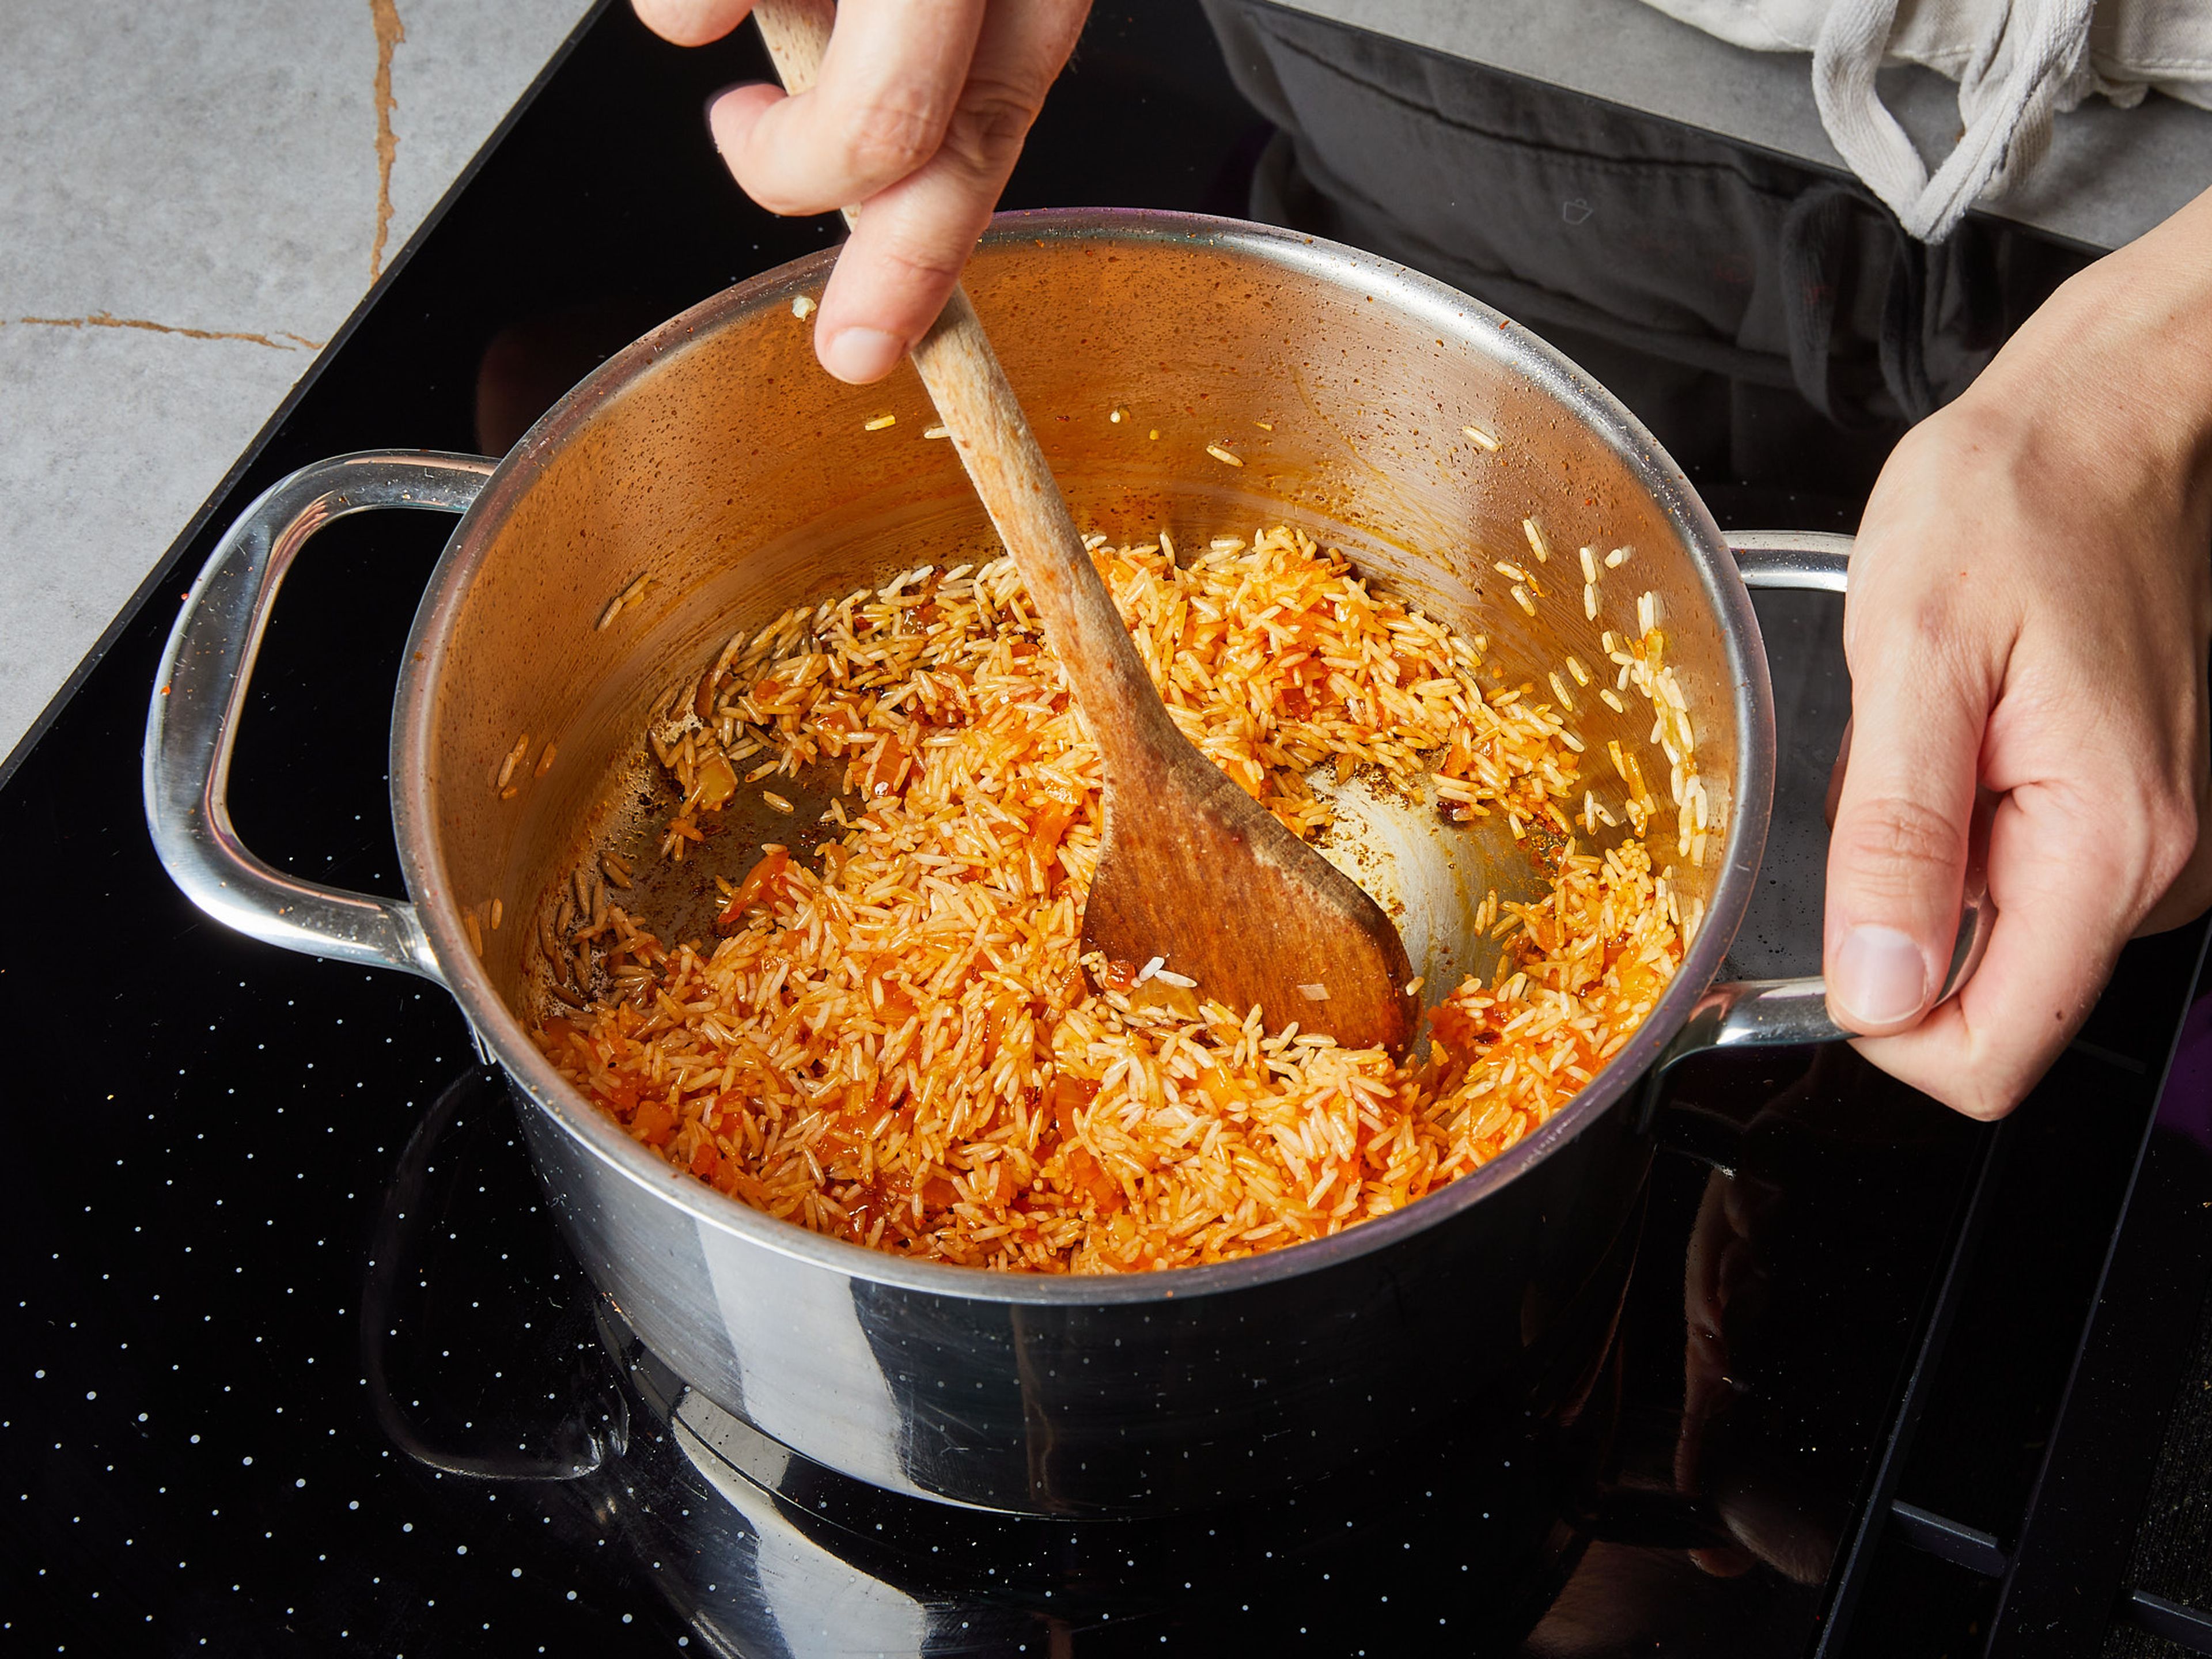 In der Zwischenzeit die Zwiebel würfeln, den Knoblauch hacken und die Minze und Petersilie fein hacken. Den Feta mit den Händen zerbröseln. Das restliche Öl in einem Topf erhitzen, Zwiebel und Knoblauch zugeben und ca. 3 Min. bei mittlerer Hitze anbraten, mit Salz würzen. Harissa zugeben, vermischen und ca. 1 Min. braten. Reis hinzugeben und ca. 2 Min. braten. In der Zwischenzeit die Walnüsse hacken und in den Topf geben.